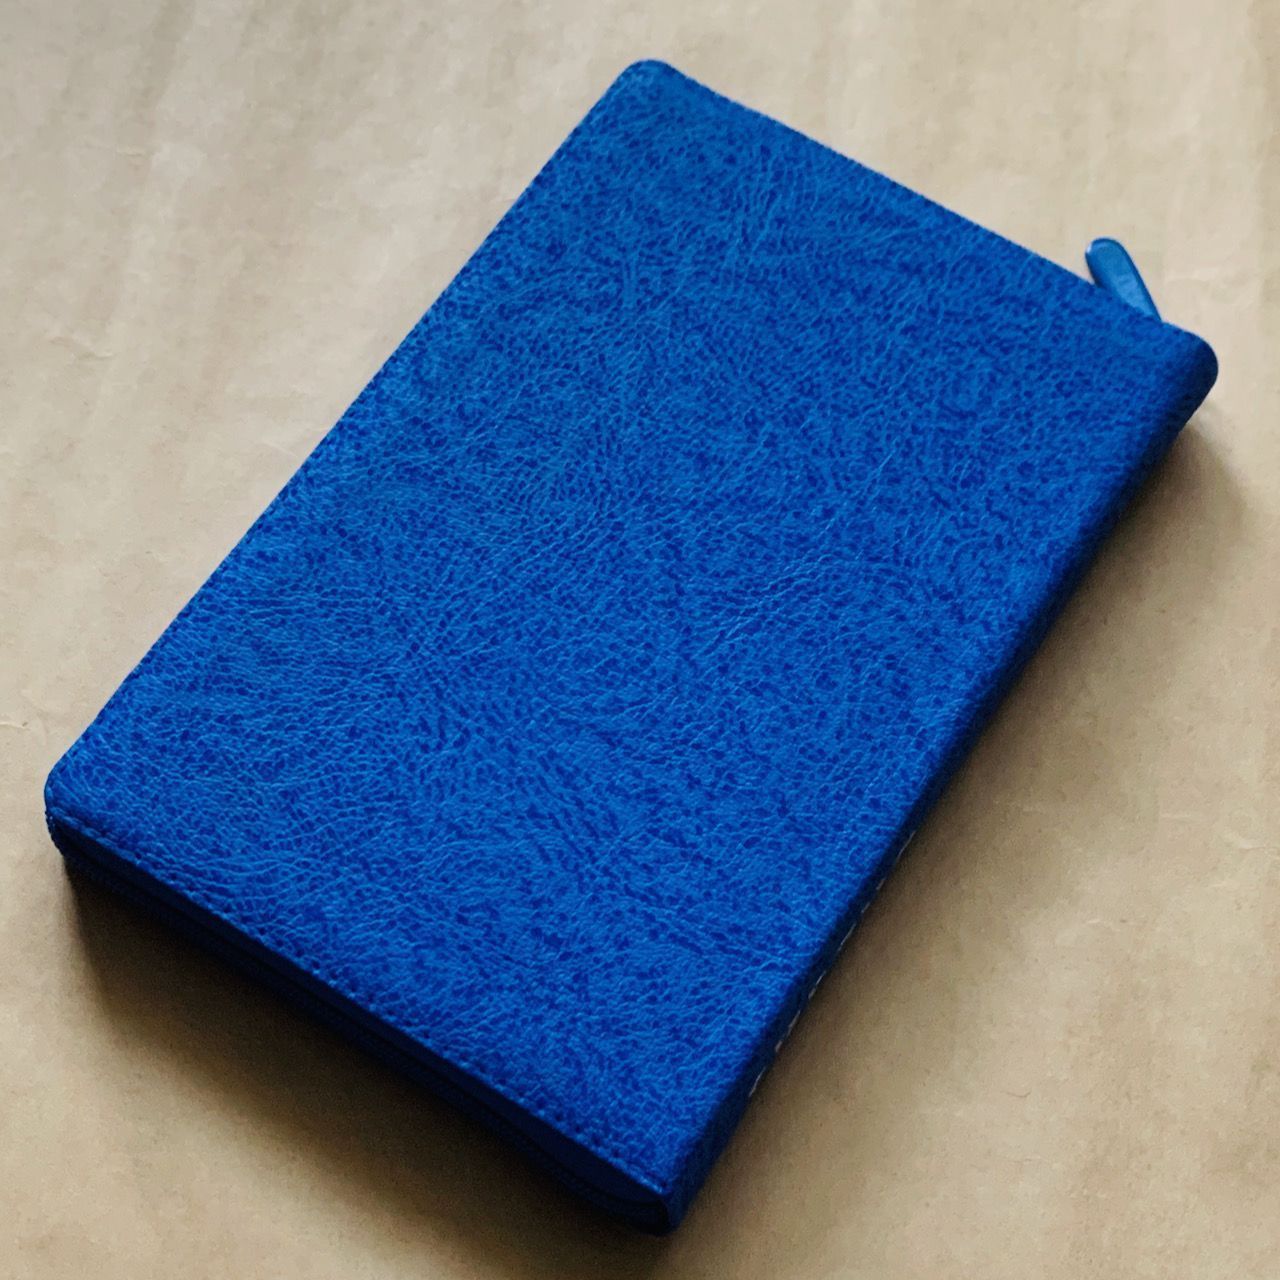 Библия 055 zti код F6 7075 переплет из искусственной кожи на молнии с индексами, цвет синий бархат-капли, дизайн "голубь", средний формат, 143*220 мм, паралельные места по центру страницы, серебряный обрез, крупный шрифт